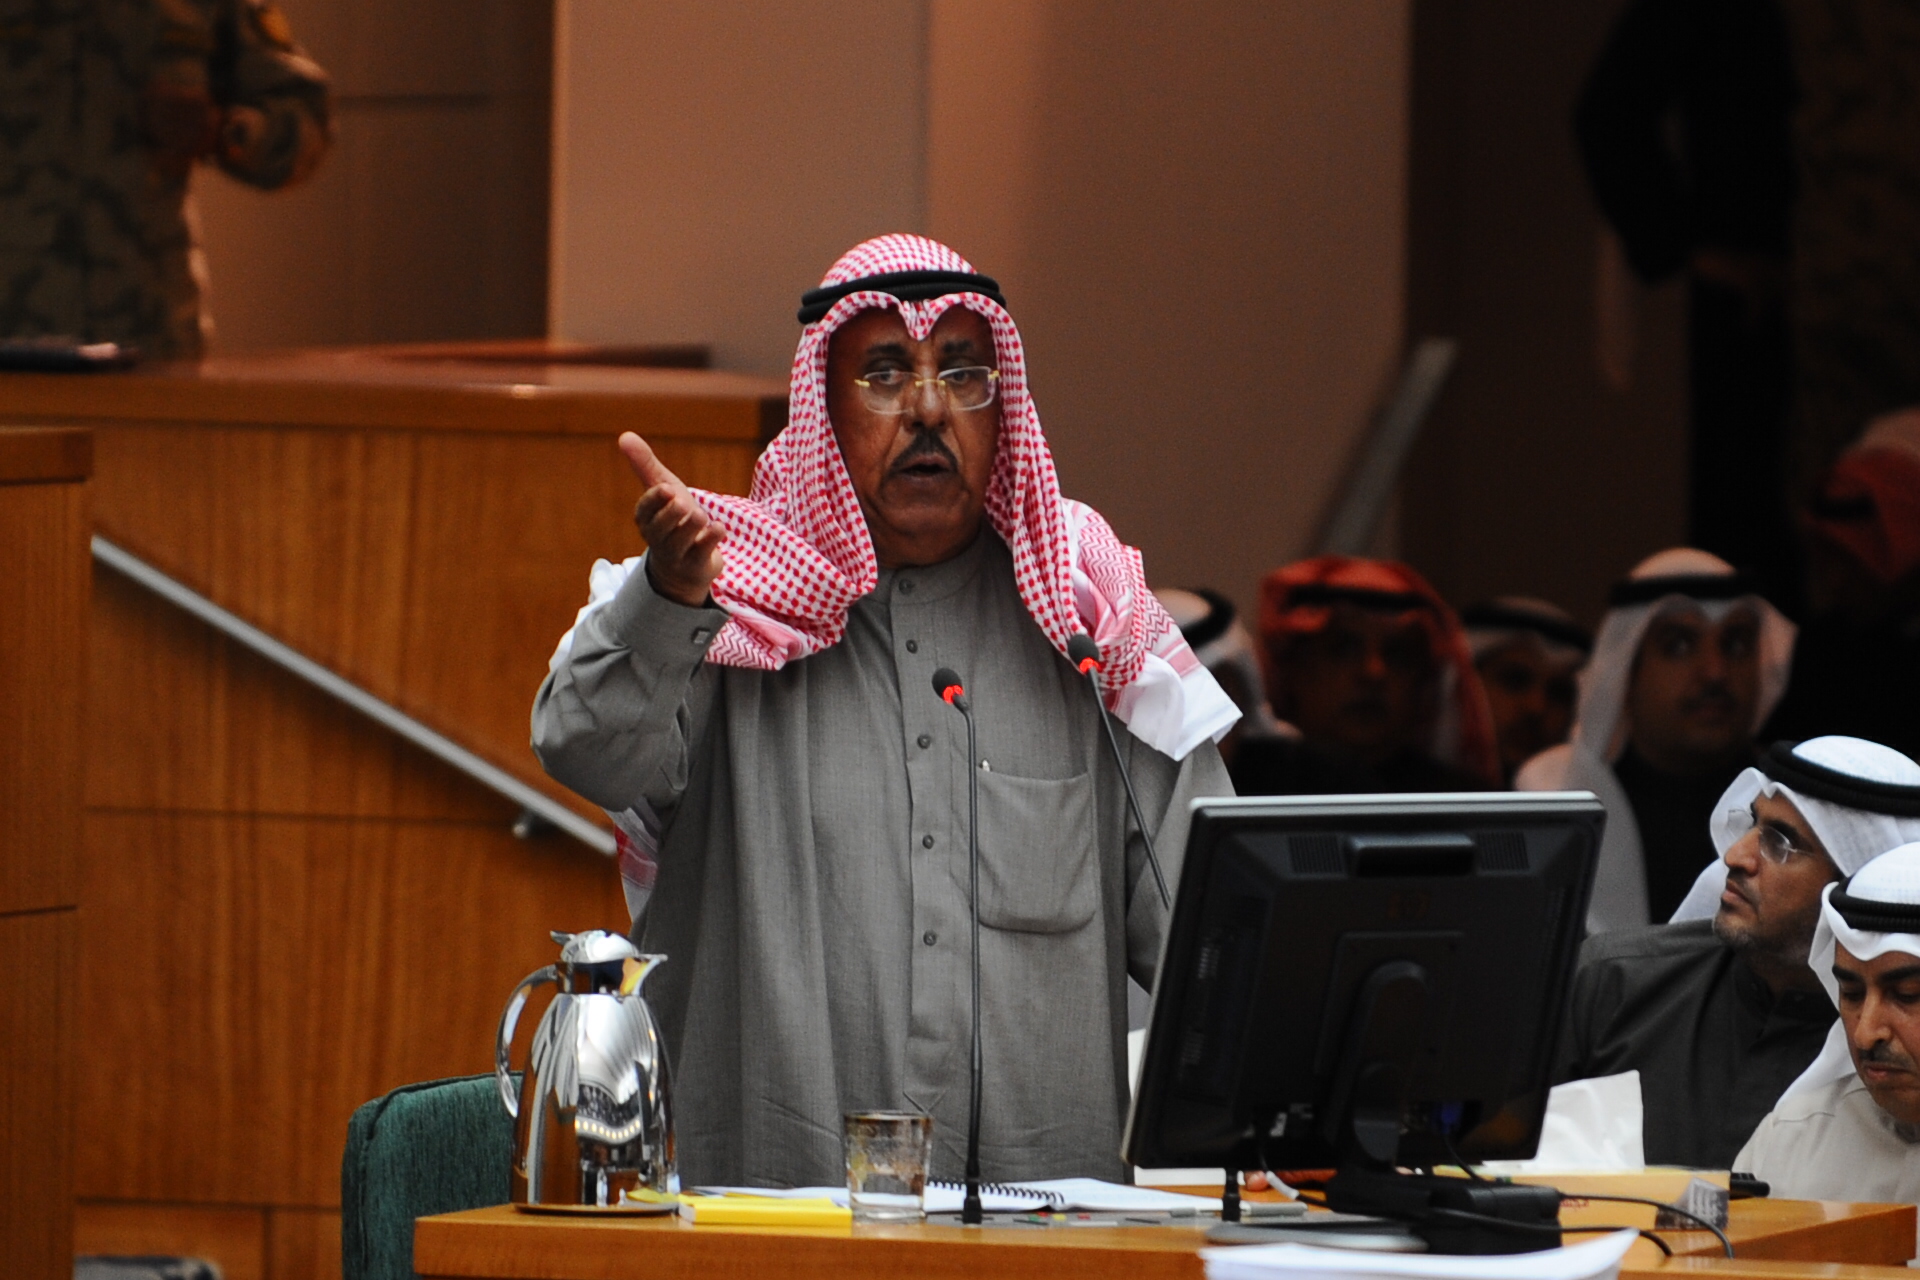 وزير الداخلية الفريق الركن م الشيخ جابر الخالد الصباح خلال الاستجواب